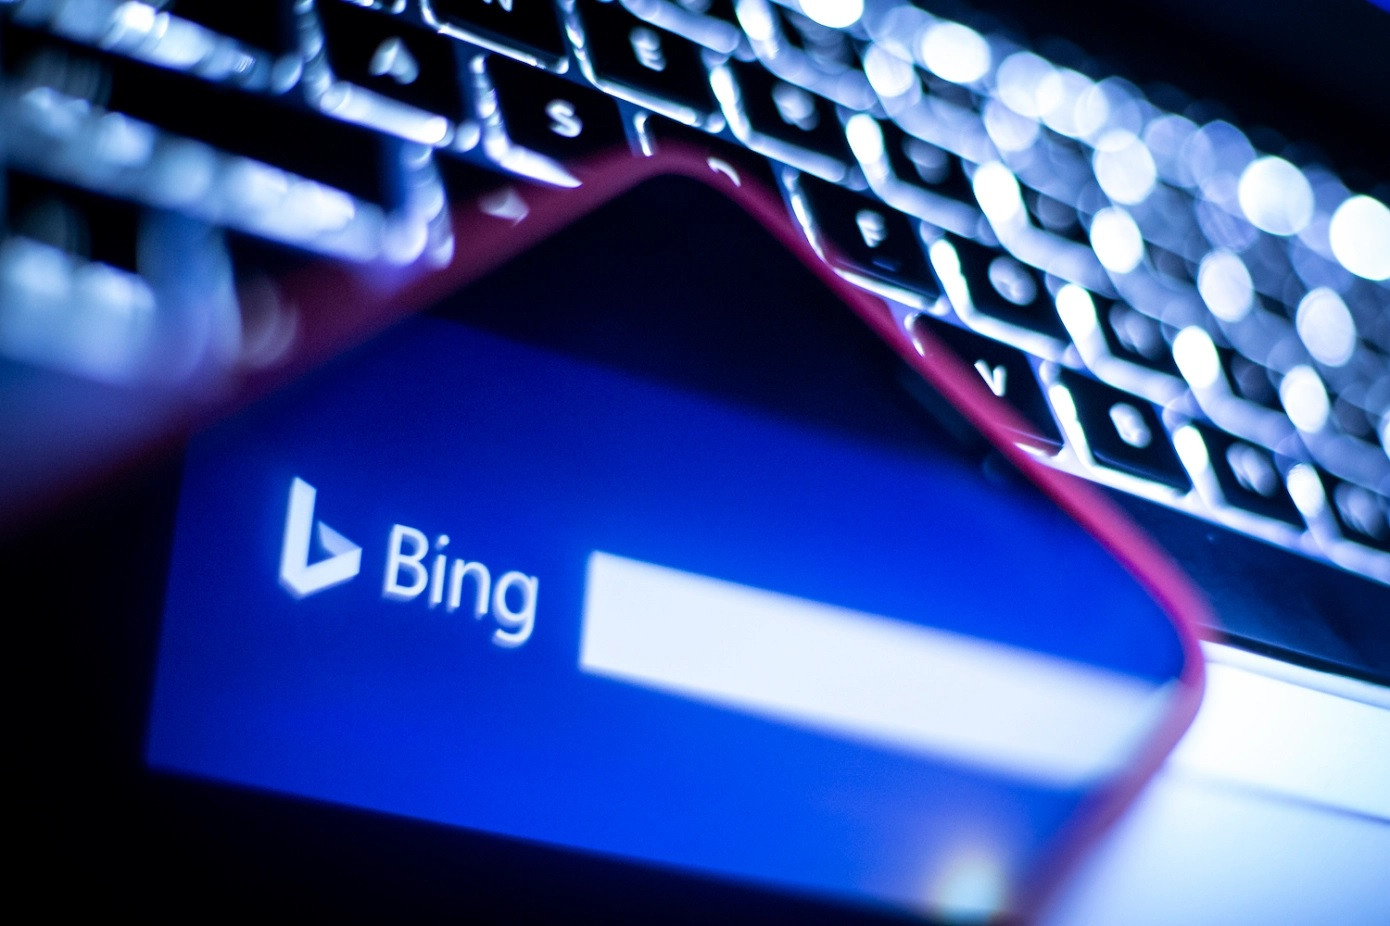 Microsoft tích hợp công cụ tạo ảnh từ văn bản Dall-E vào Bing